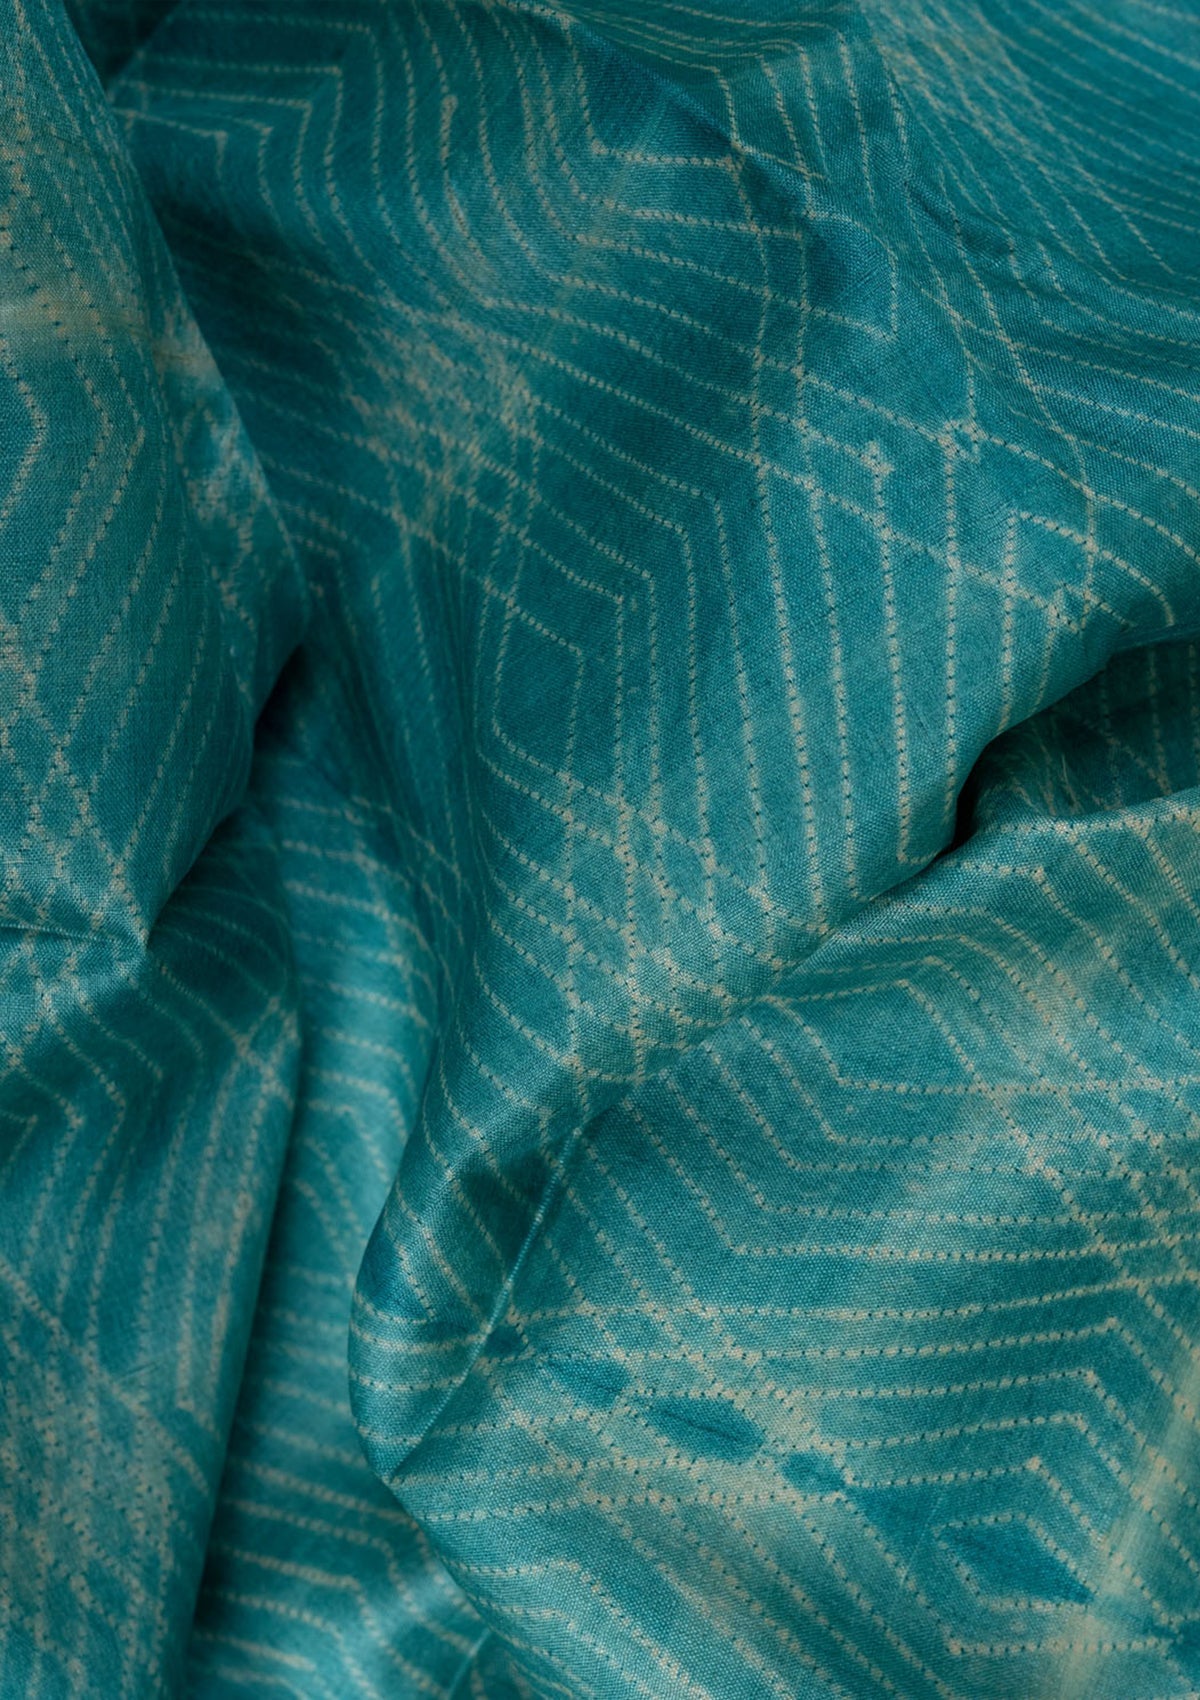 Handwoven Sea Blue Shibori Fabric